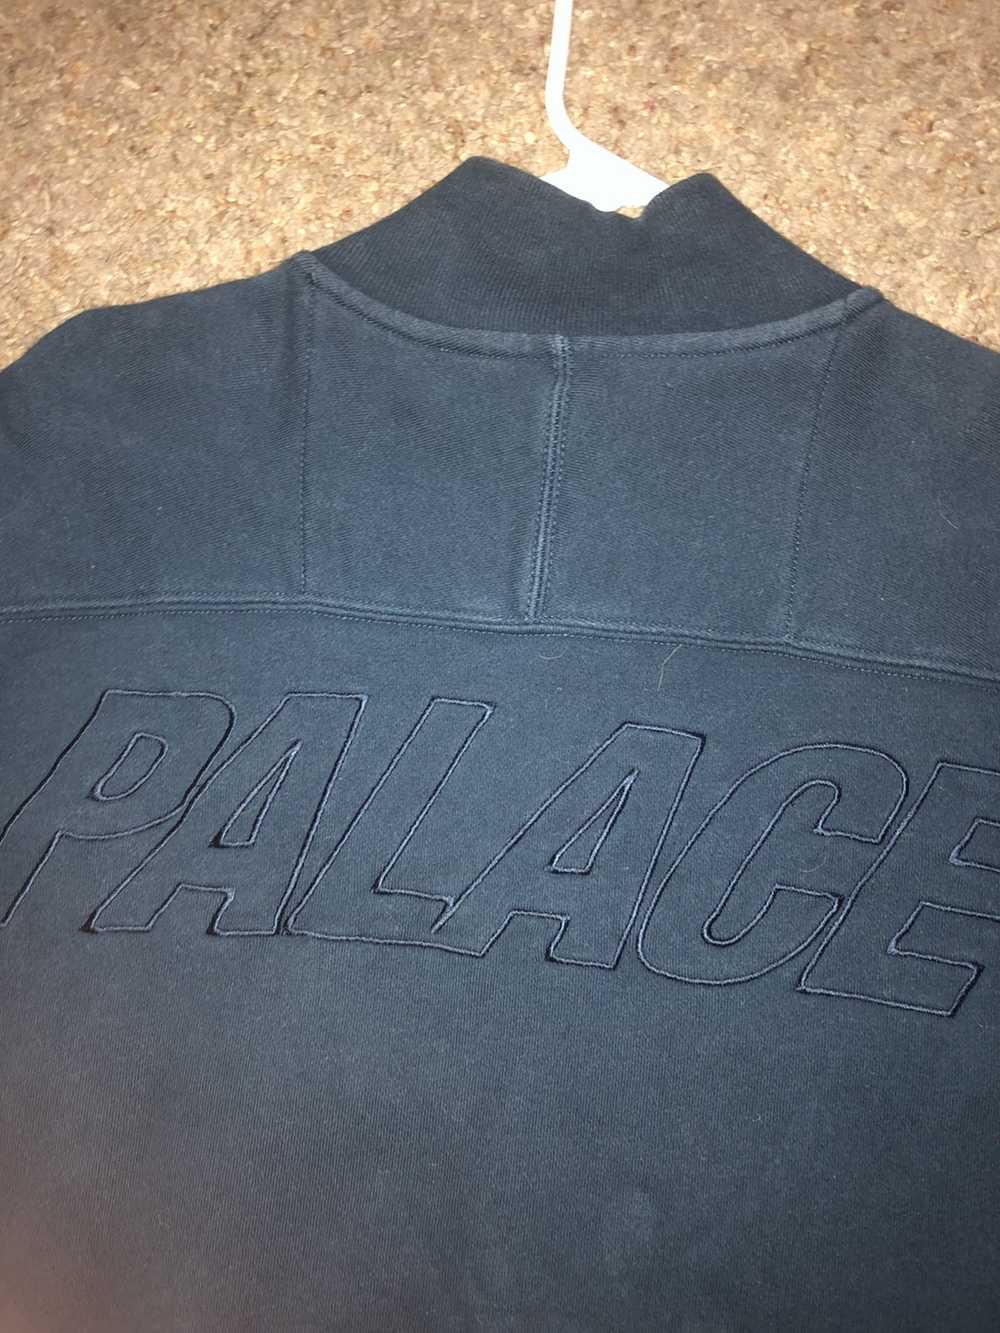 Palace Embroidered Palace navy bomber jacket - image 2